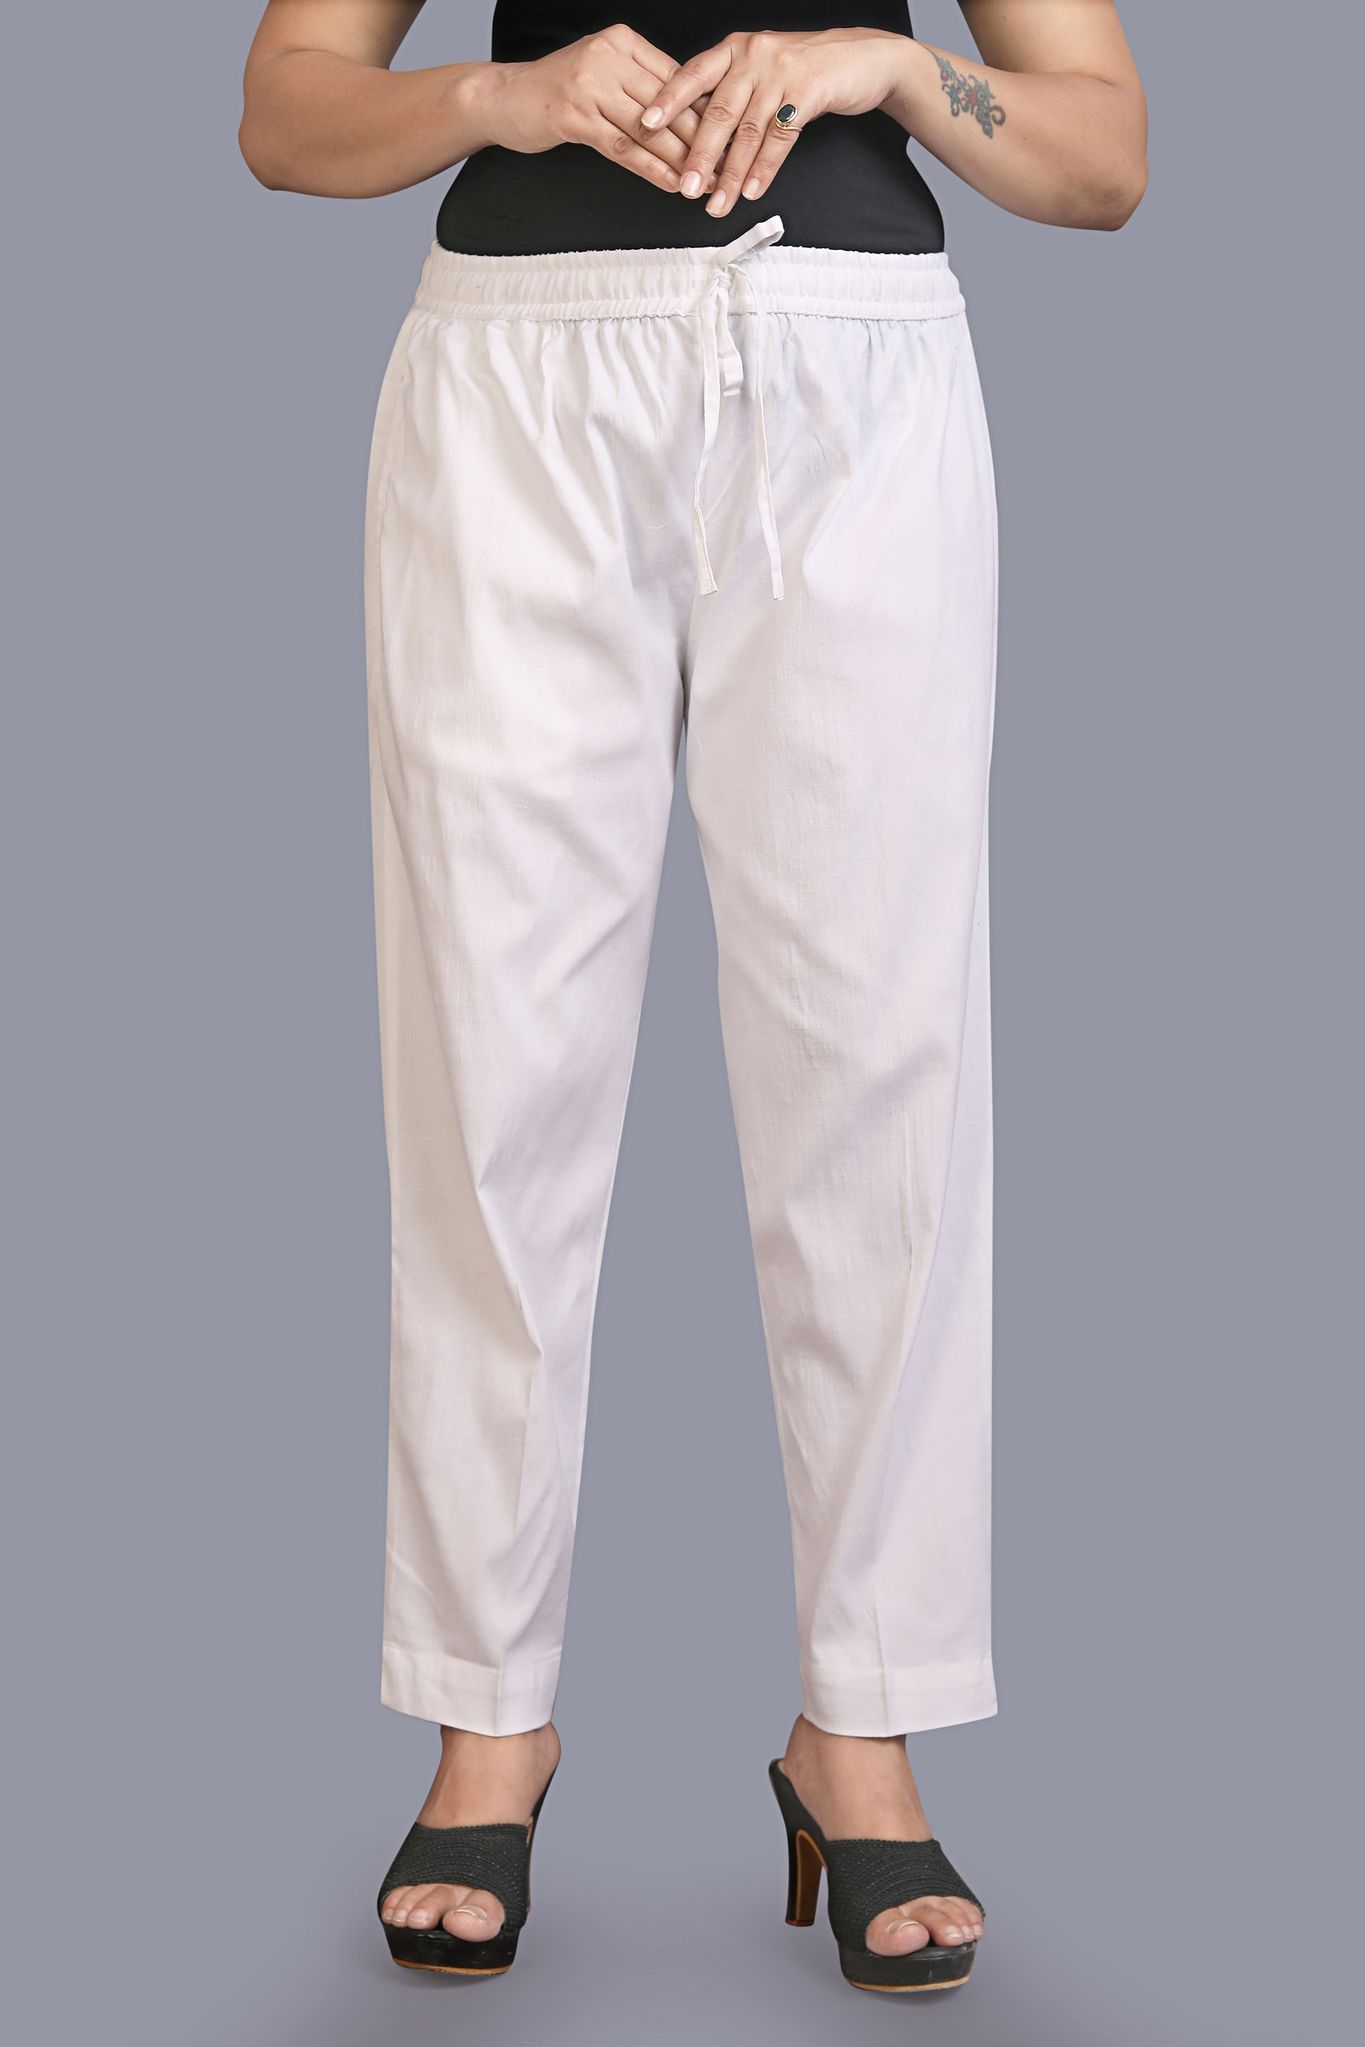 Women's White Cotton Lycra Pant